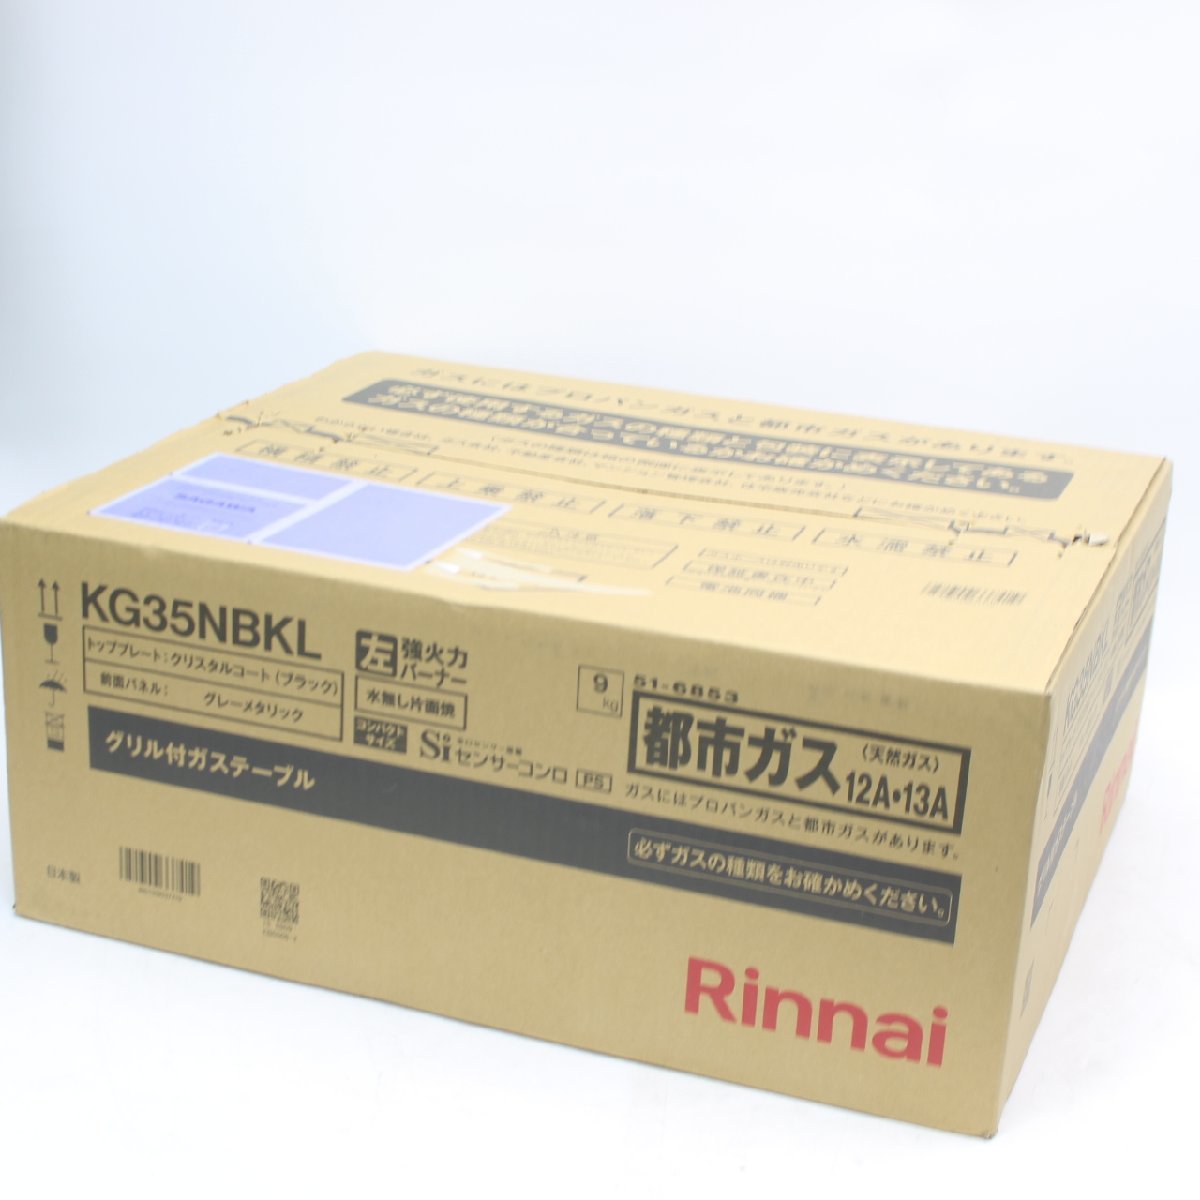 川崎市川崎区にて リンナイ ガステーブル 都市ガス用 KG35NBKL 13A  を出張買取させて頂きました。